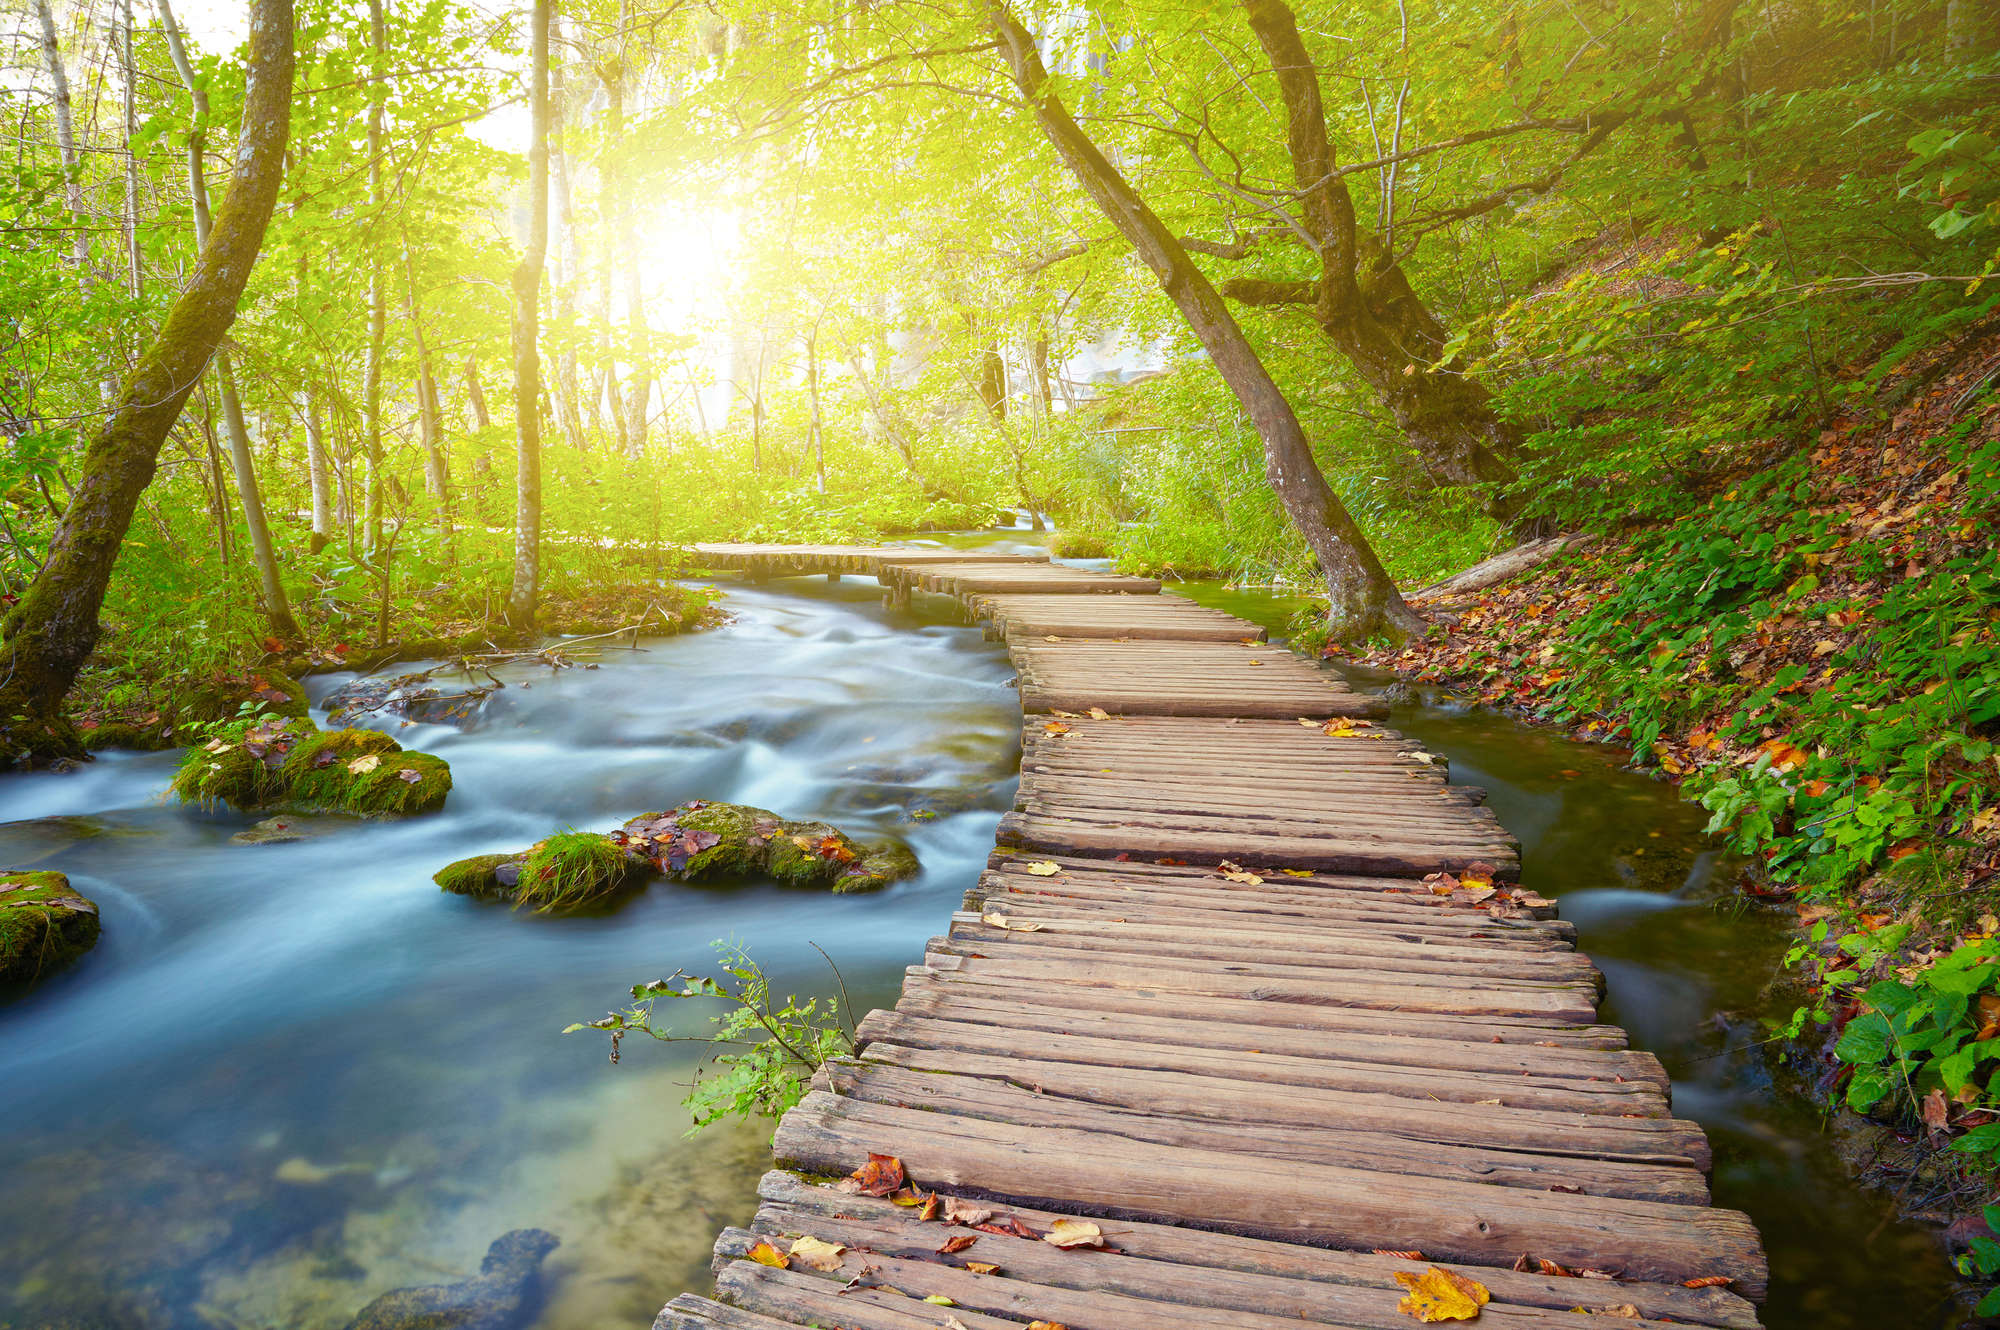             Natuurbehang rivier in het bos met houten brug op parelmoer glad vlies
        